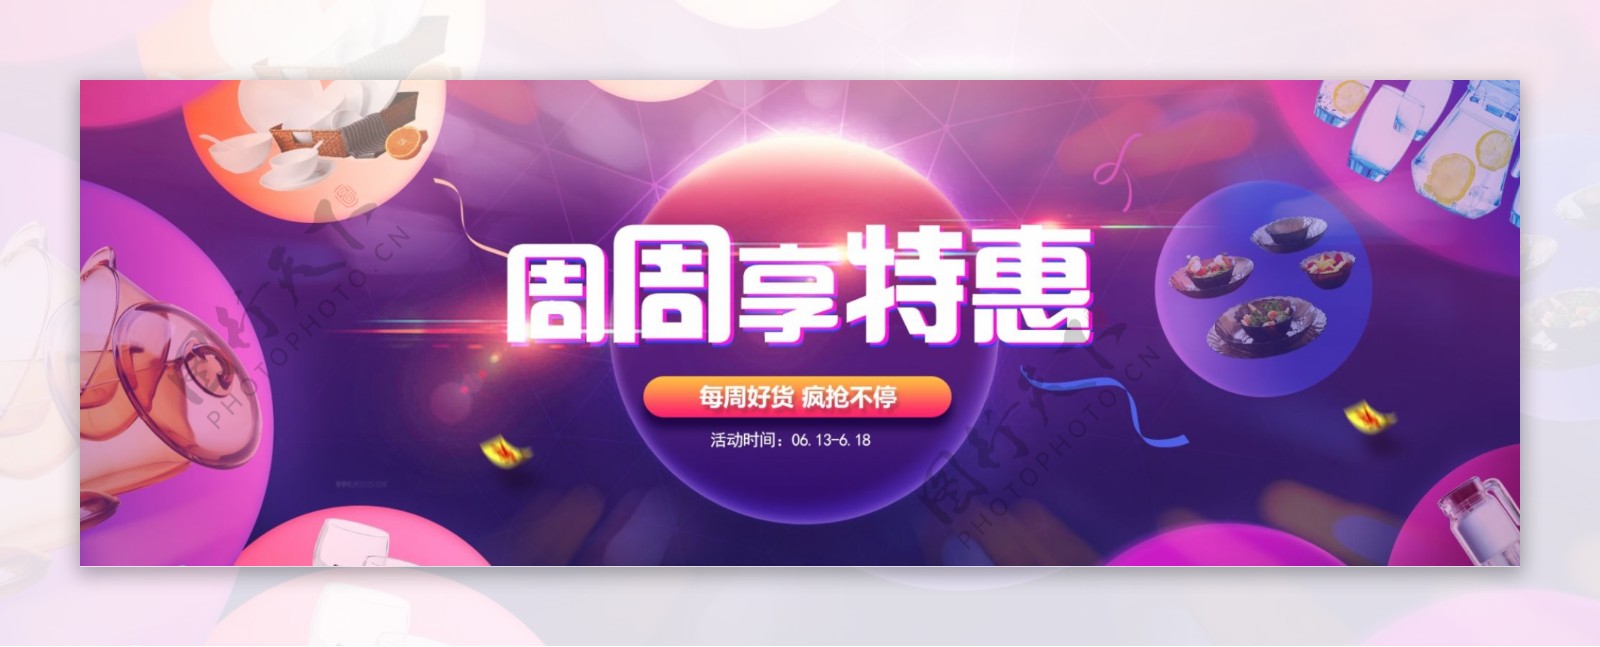 电商淘宝节日活动紫色首图banner海报